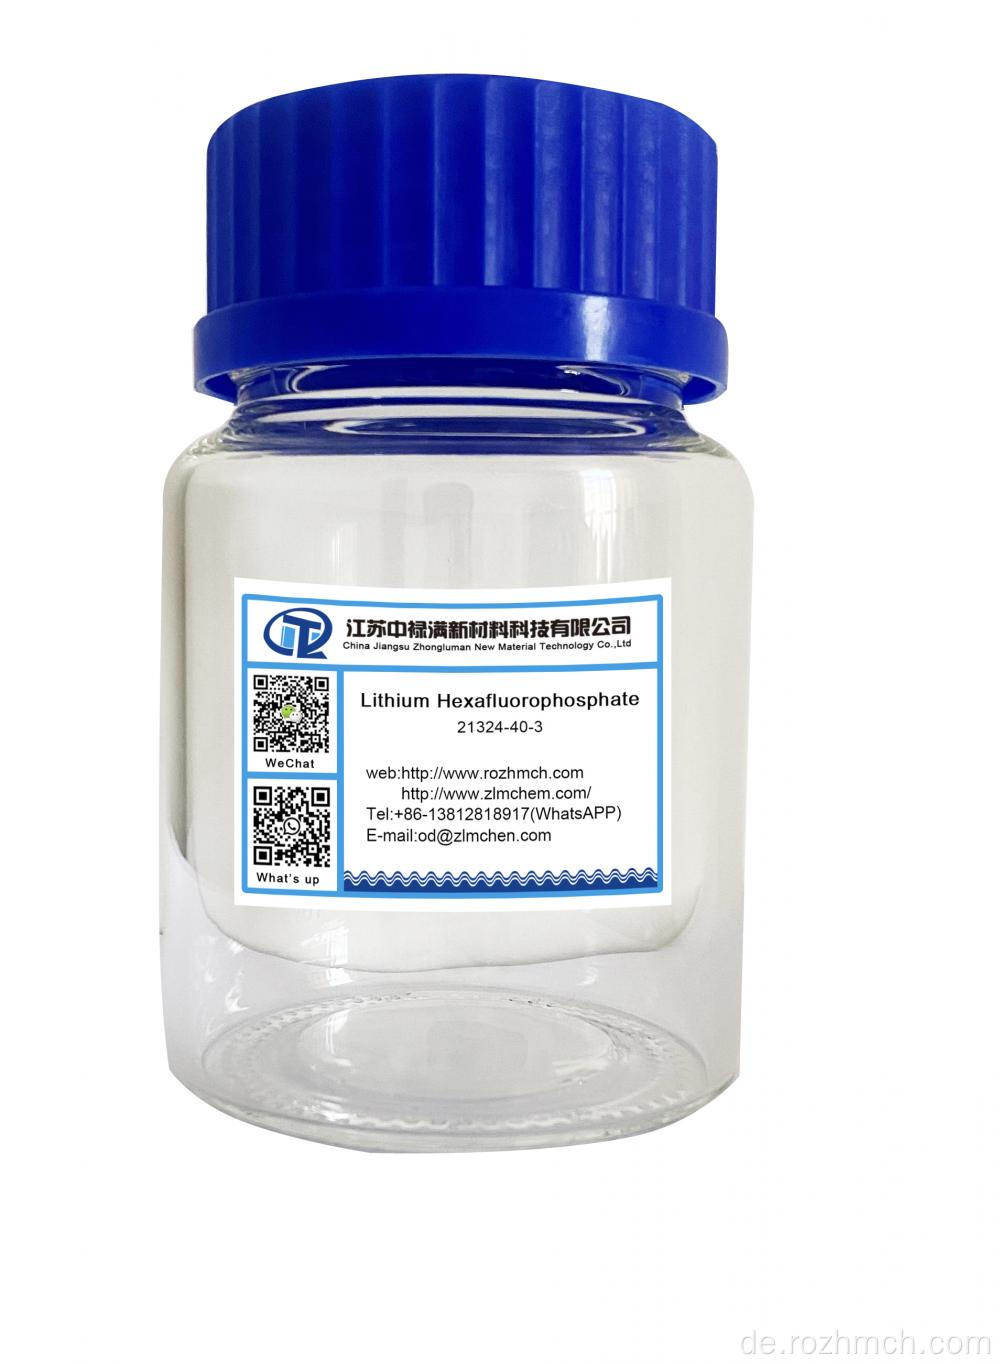 Lithiumhexafluorophosphat CAS Nr. 21324-40-3